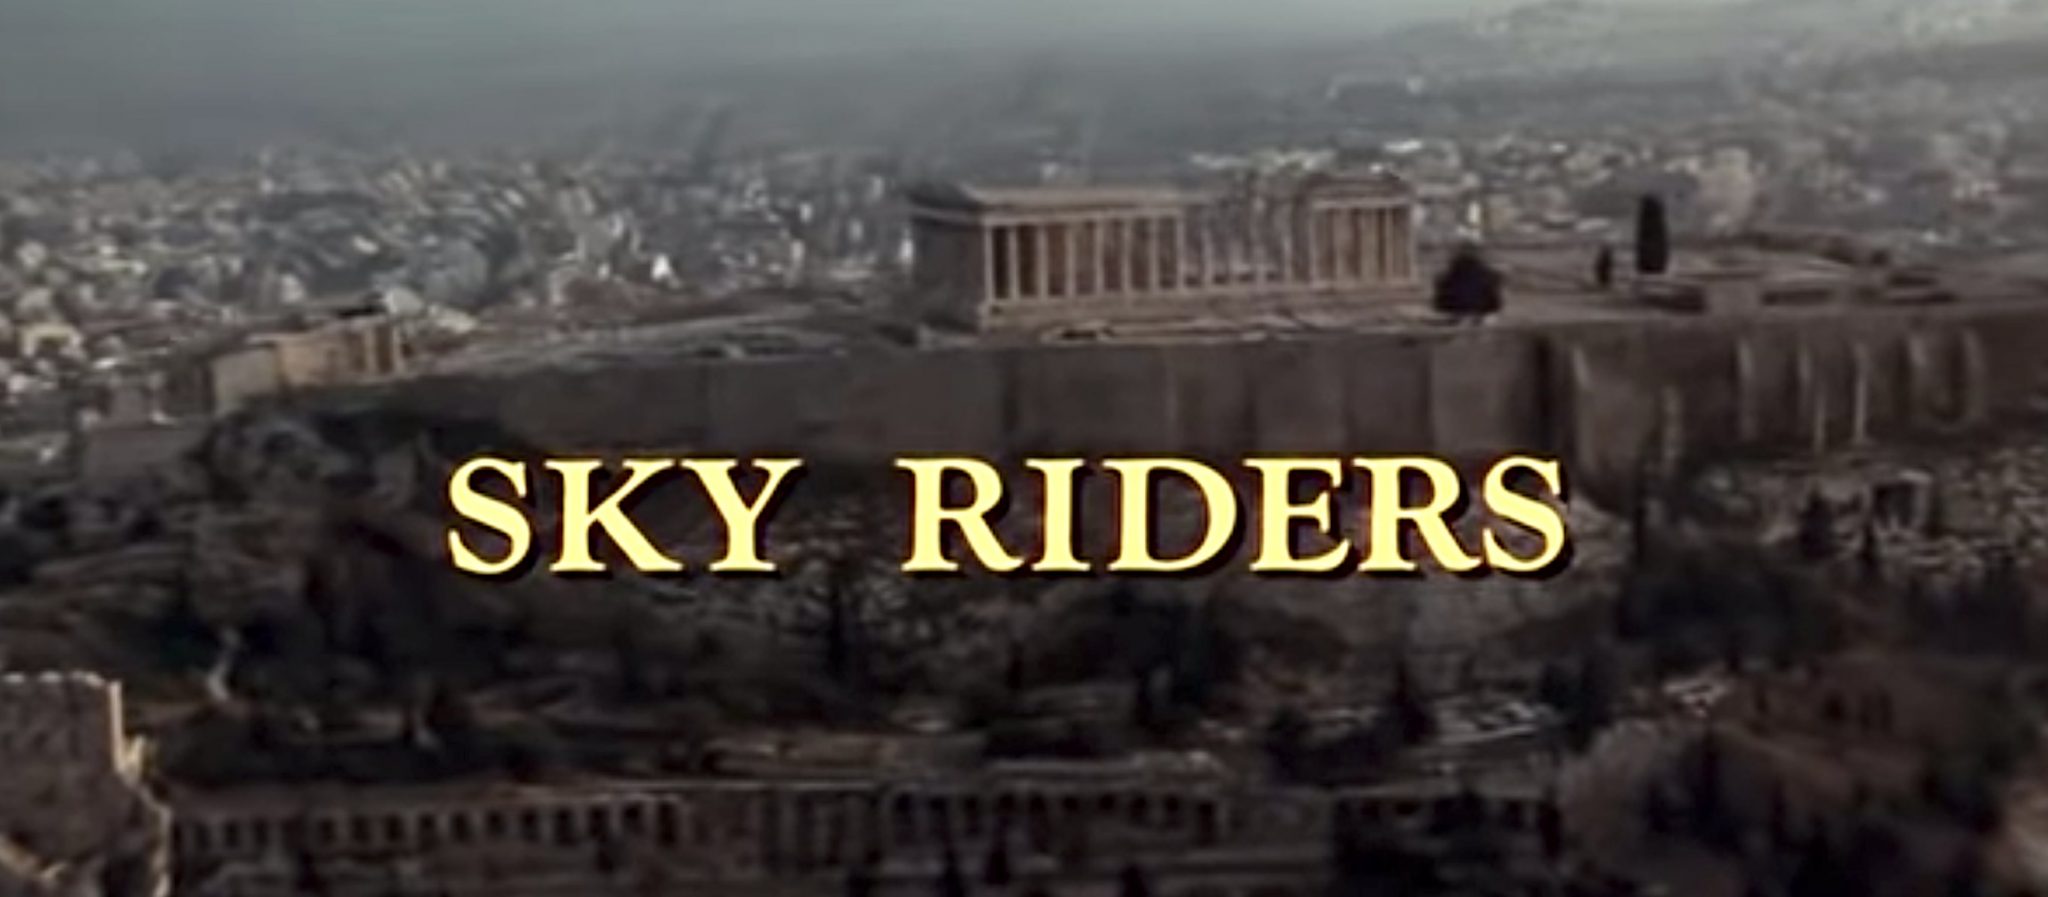 Δείτε το χολιγουντιανό θρίλερ “SKY RIDERS” (1976) που γυρίστηκε στην Ελλάδα!!!